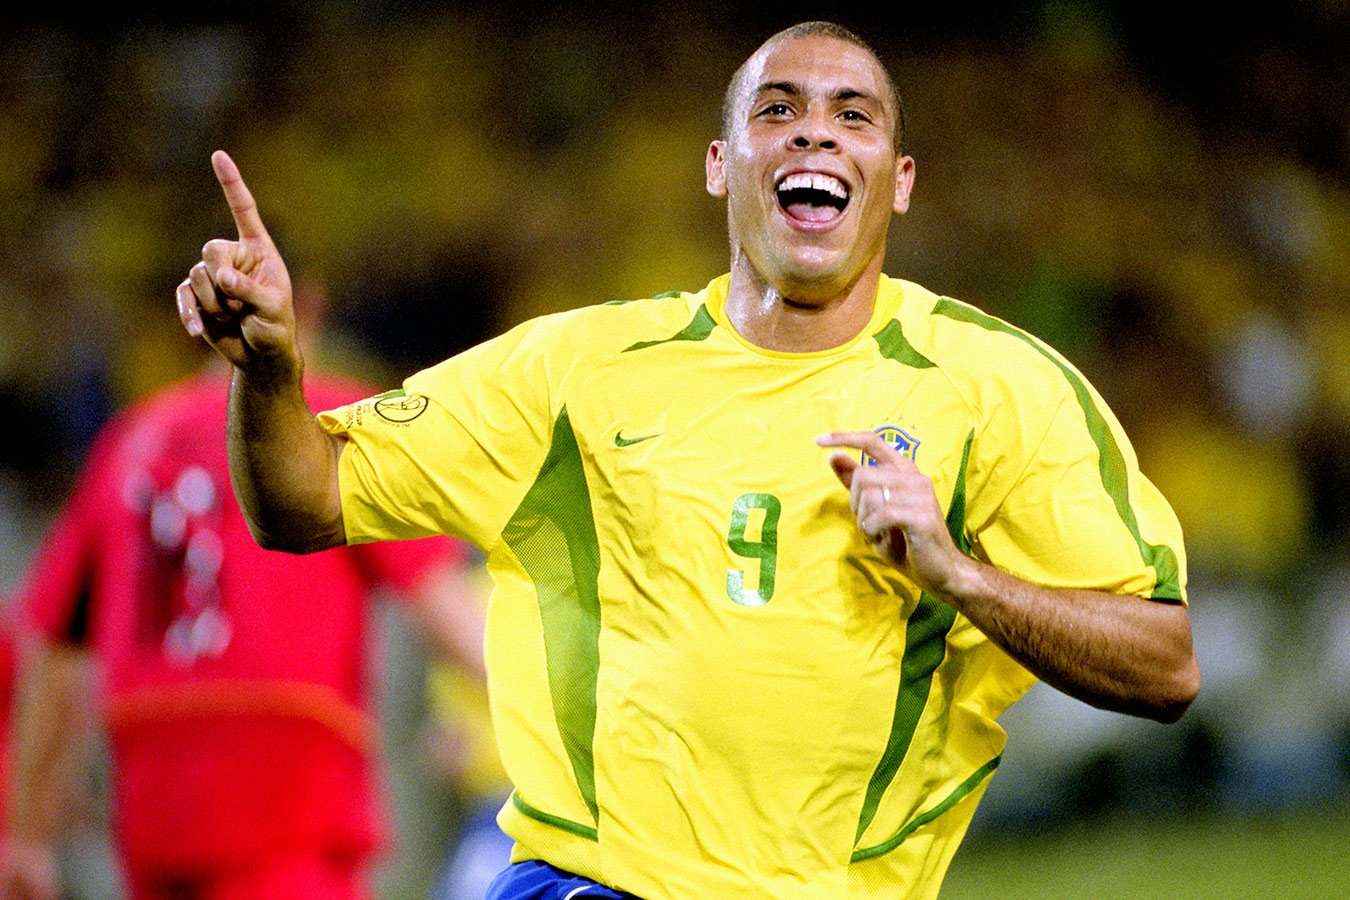 Gde seychas Ronaldo: brazilskomu napadayushemu ispolnilos 45 let - Chempionat